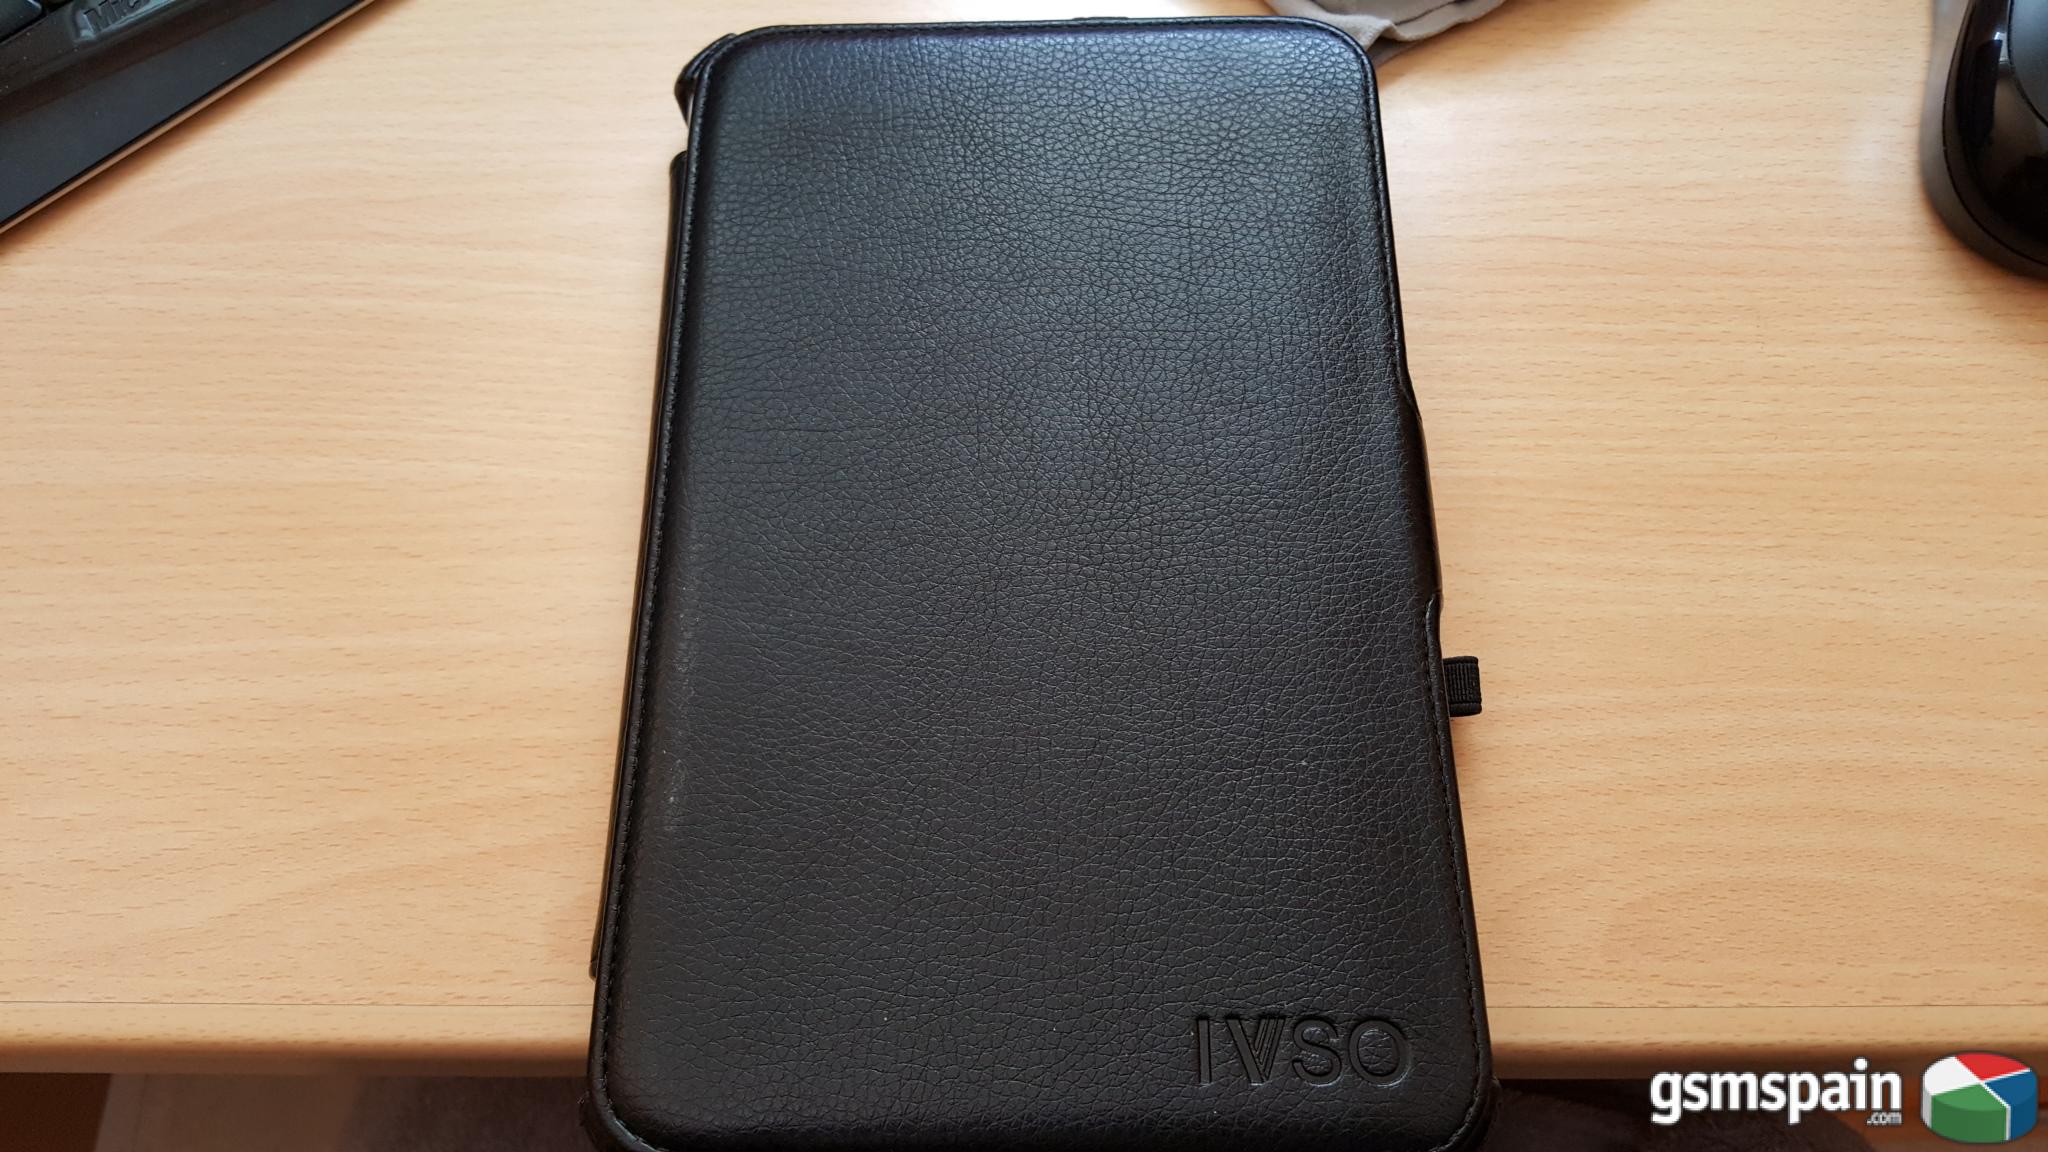 [VENDO] Tablet Acer W3-810 32Gb W8 blanca practicamente nueva